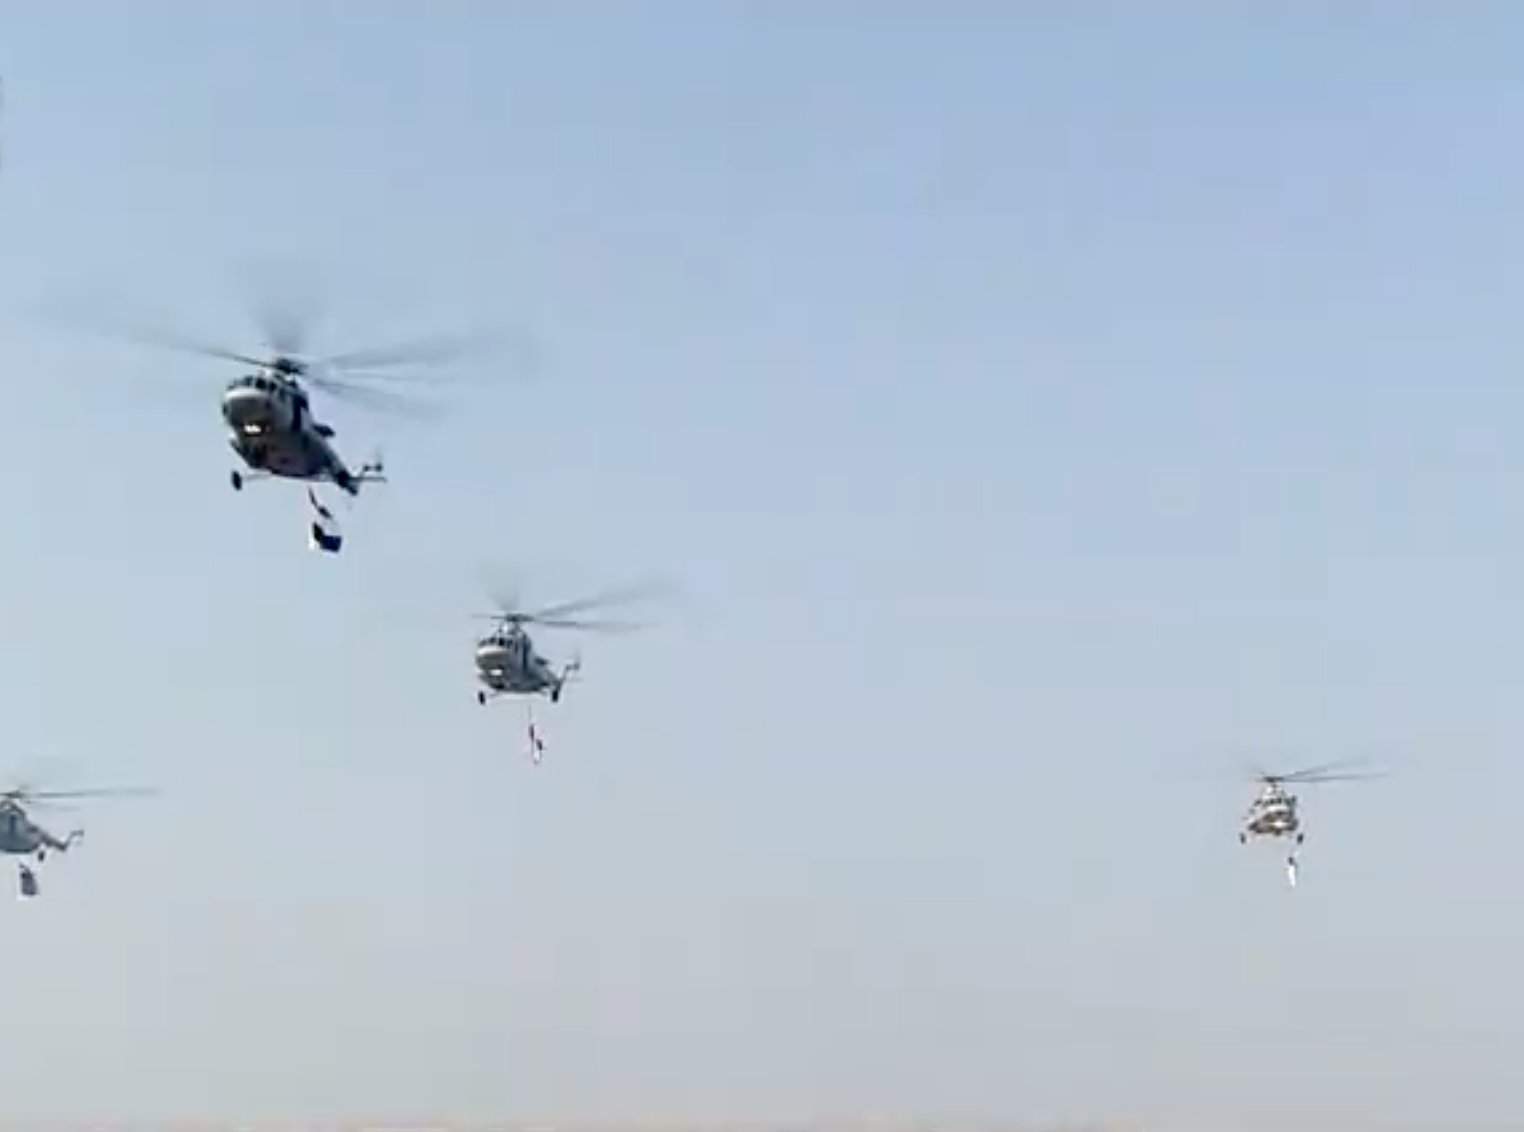 भारतीय हवाई दलाच्या हेलिकॉप्टर्समधून उपस्थितांवर पुष्पवृष्टी करण्यात आली.